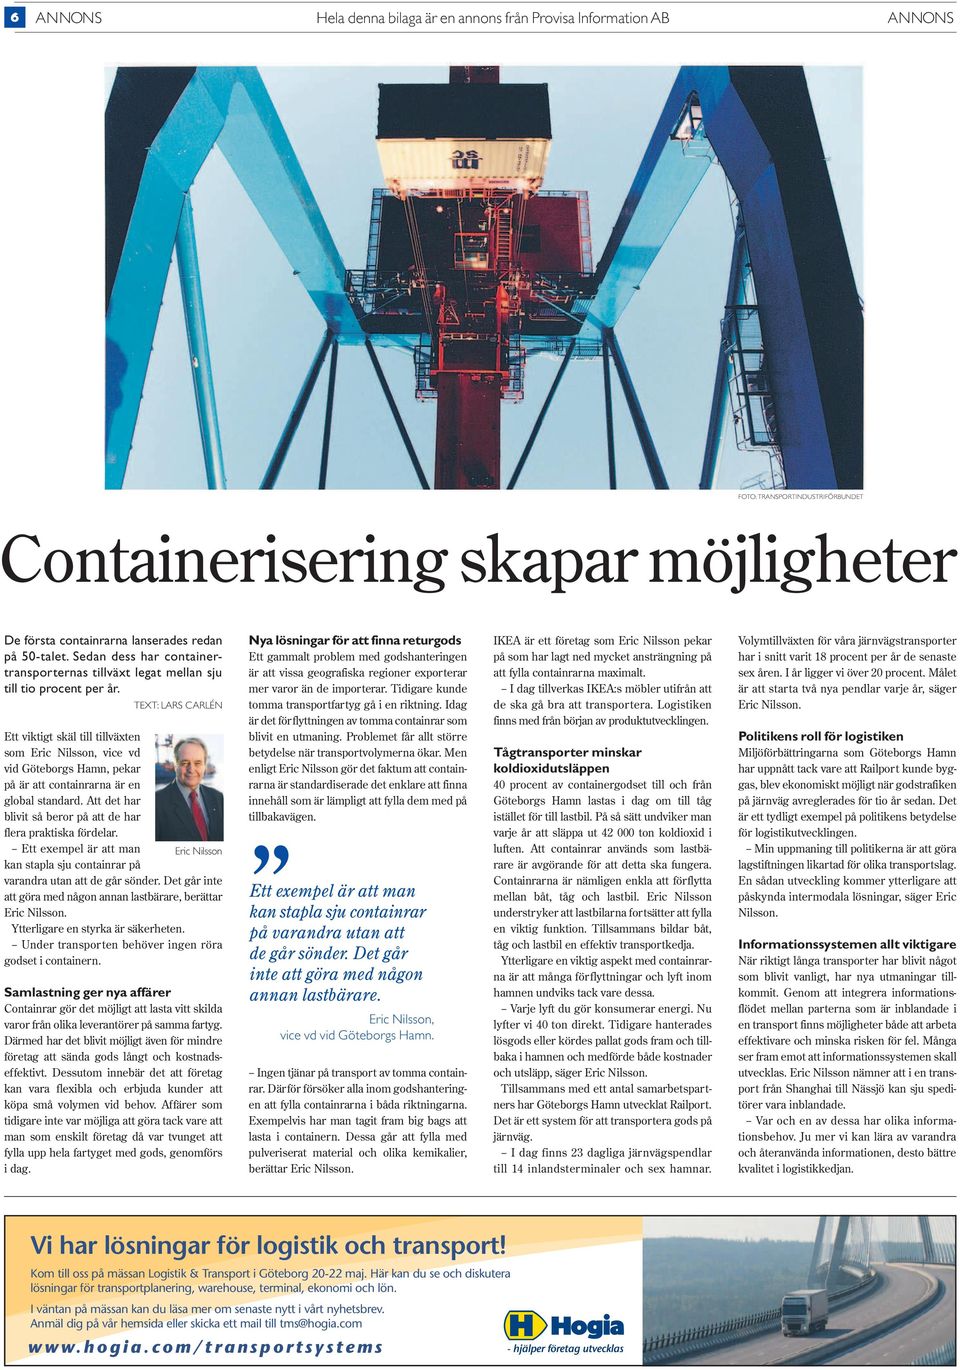 TEXT: LARS CARLÉN Ett viktigt skäl till tillväxten som Eric Nilsson, vice vd vid Göteborgs Hamn, pekar på är att containrarna är en global standard.